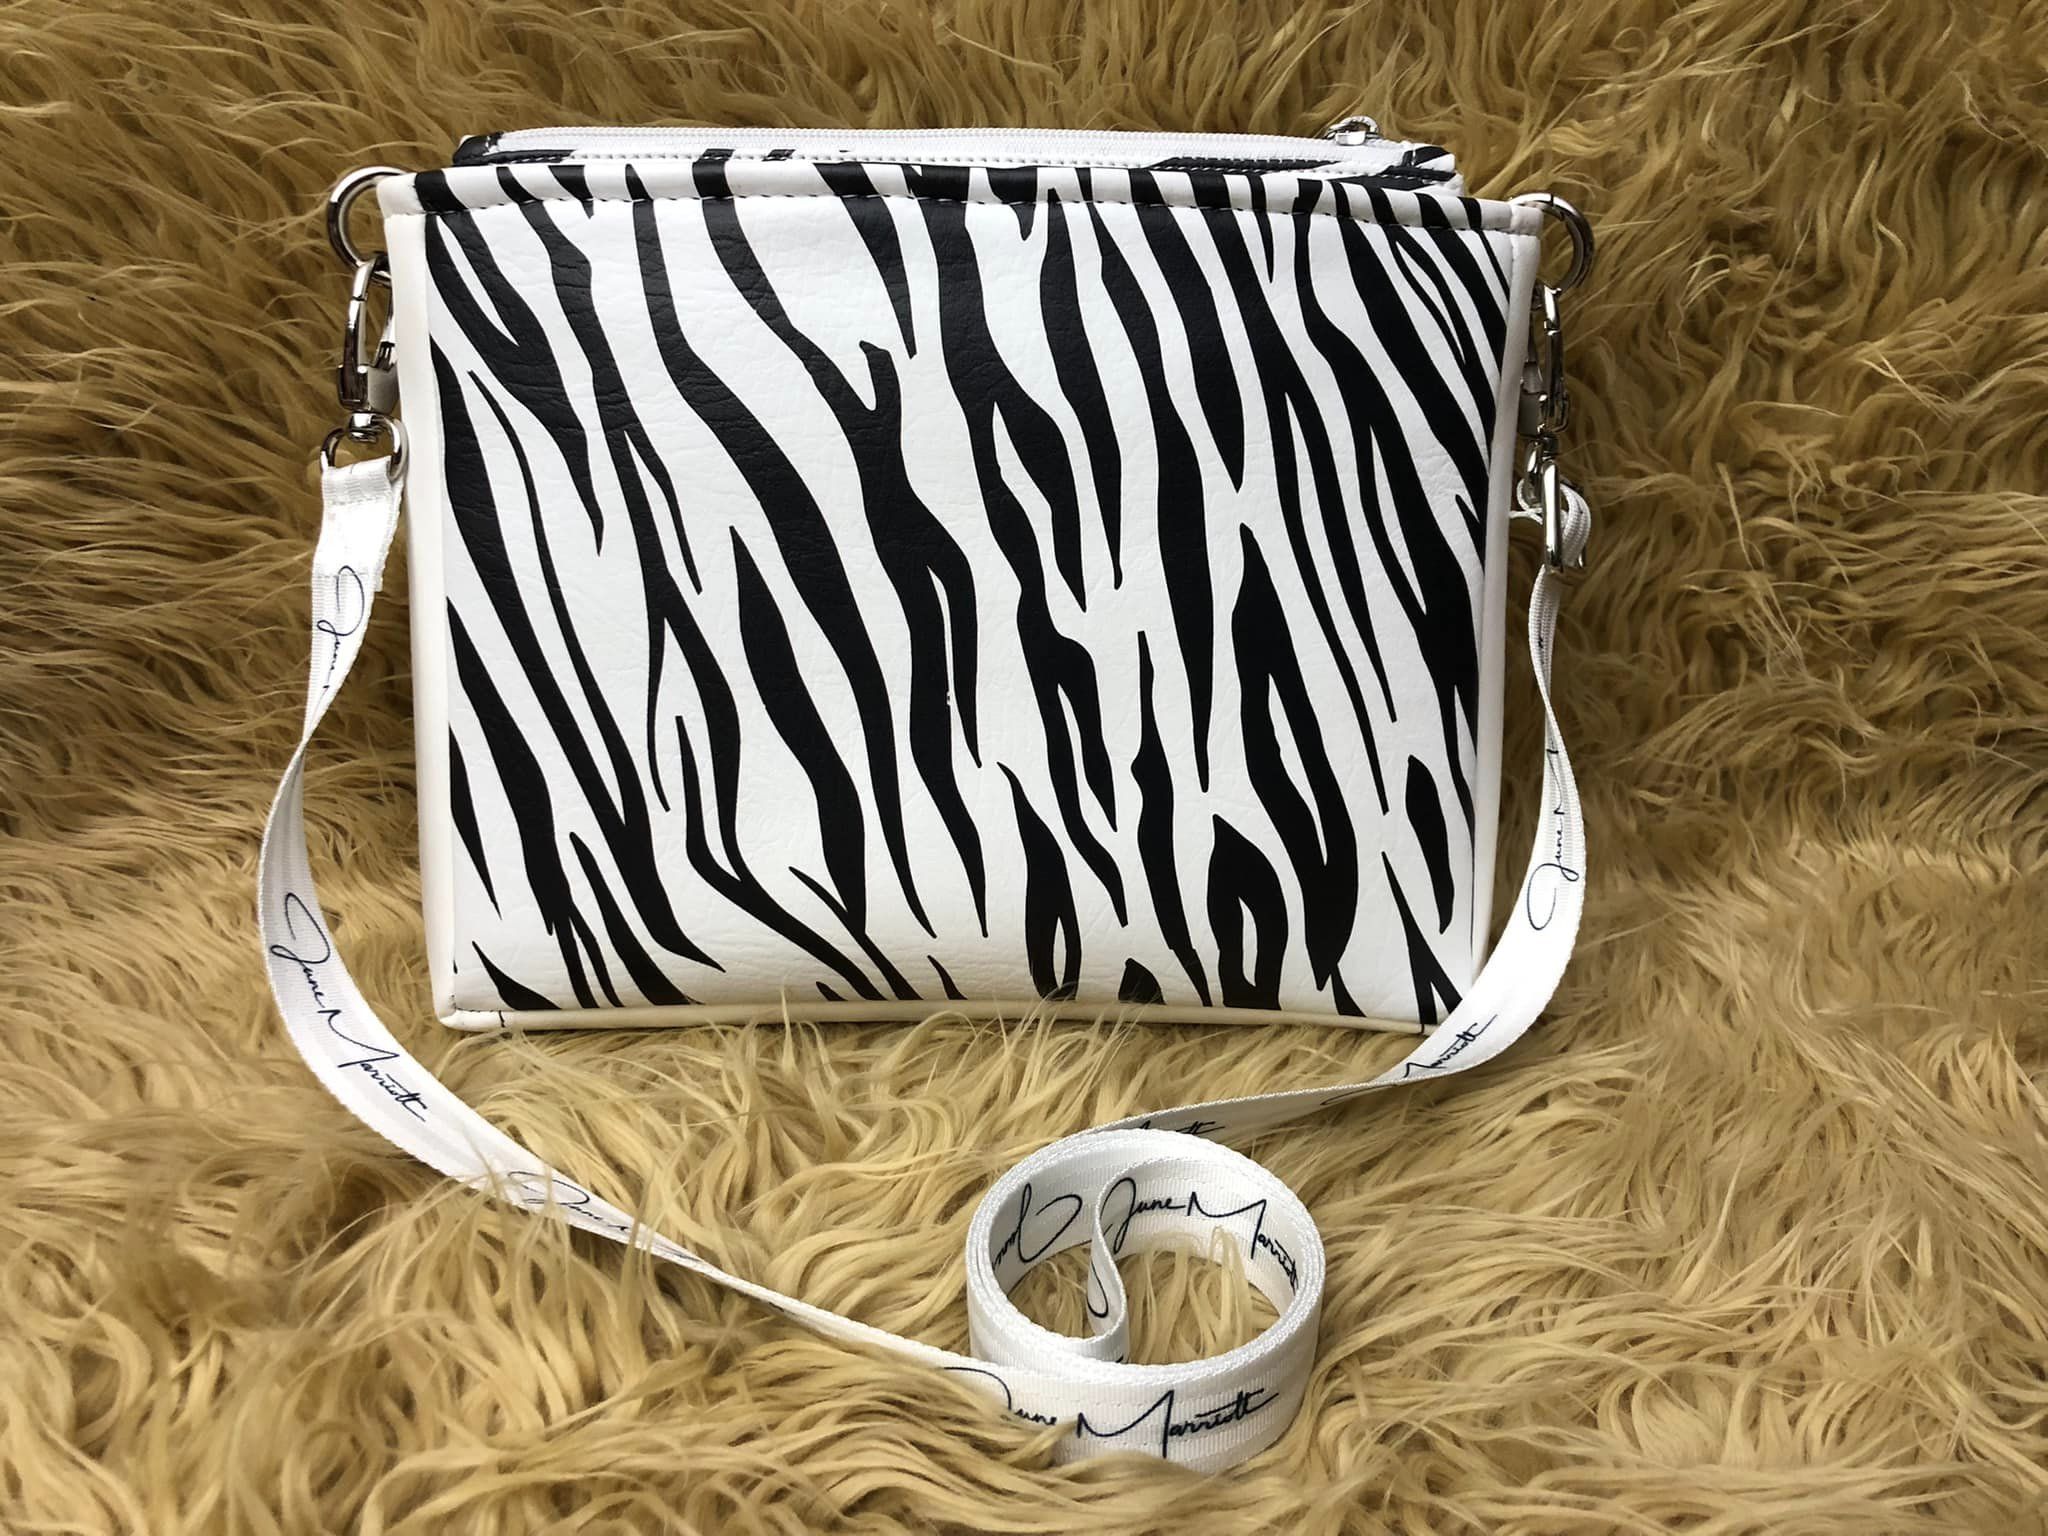 Zebra 2 sizes